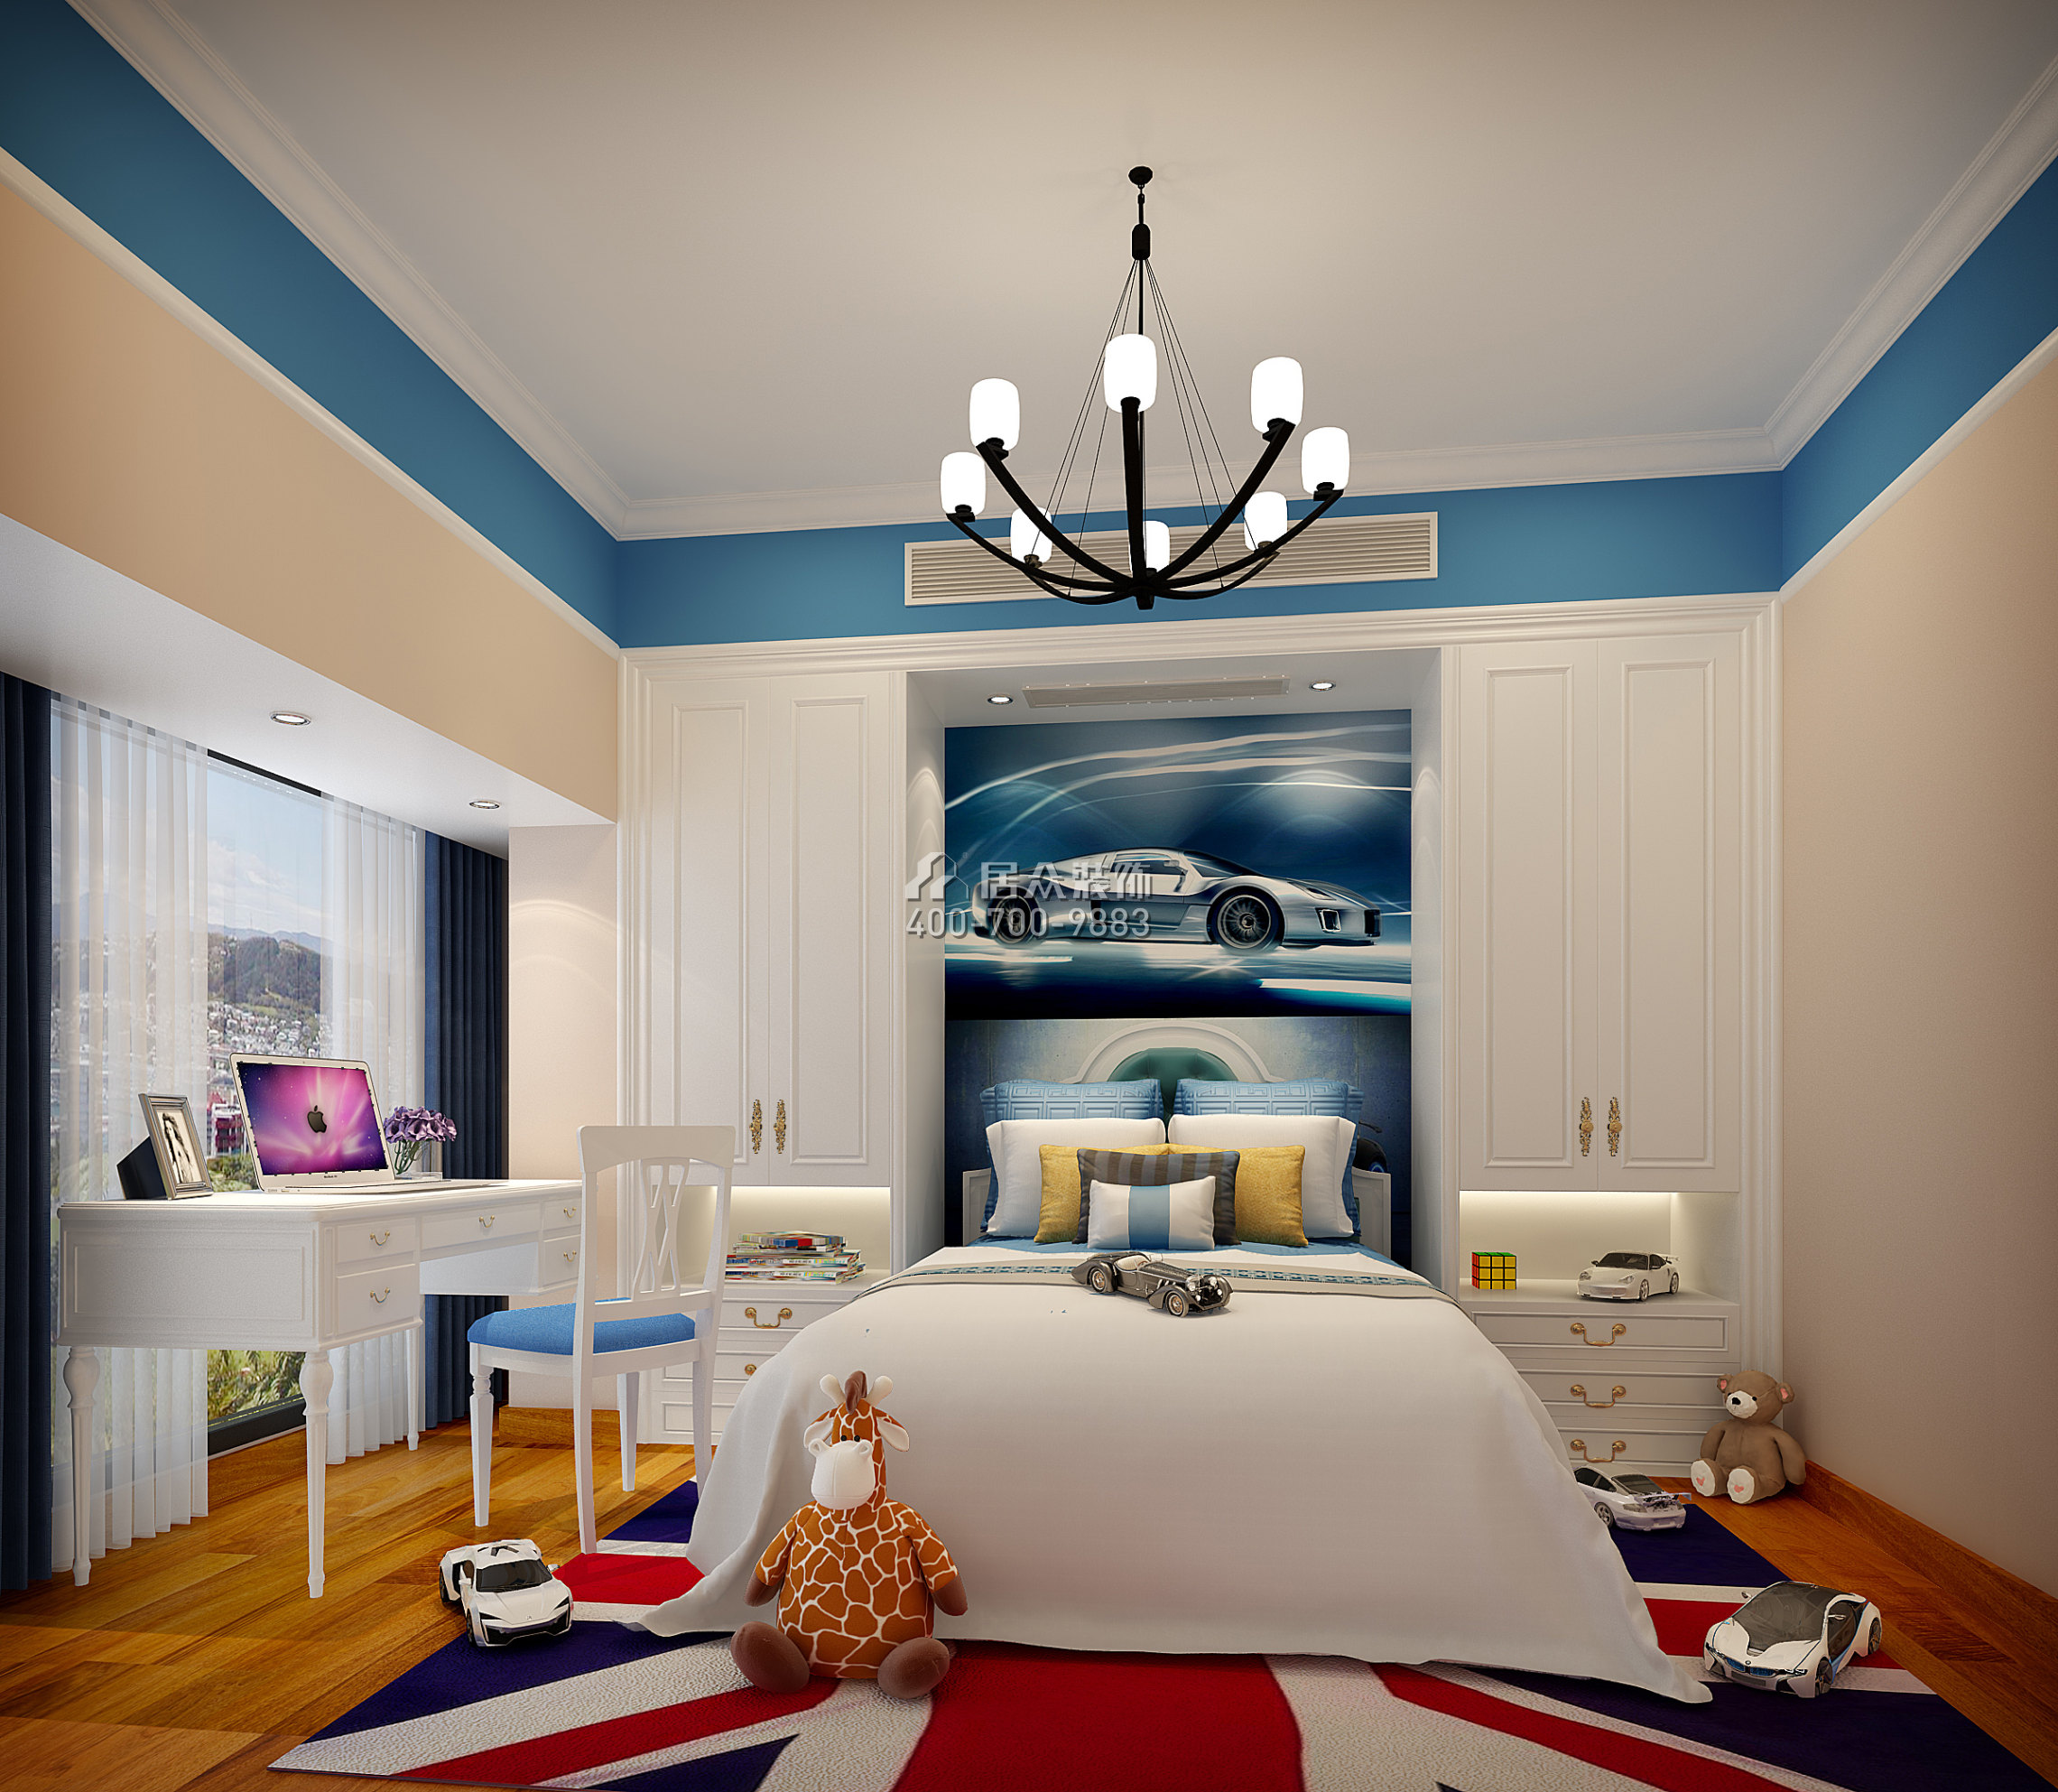 虹湾花园160平方米欧式风格平层户型卧室装修效果图